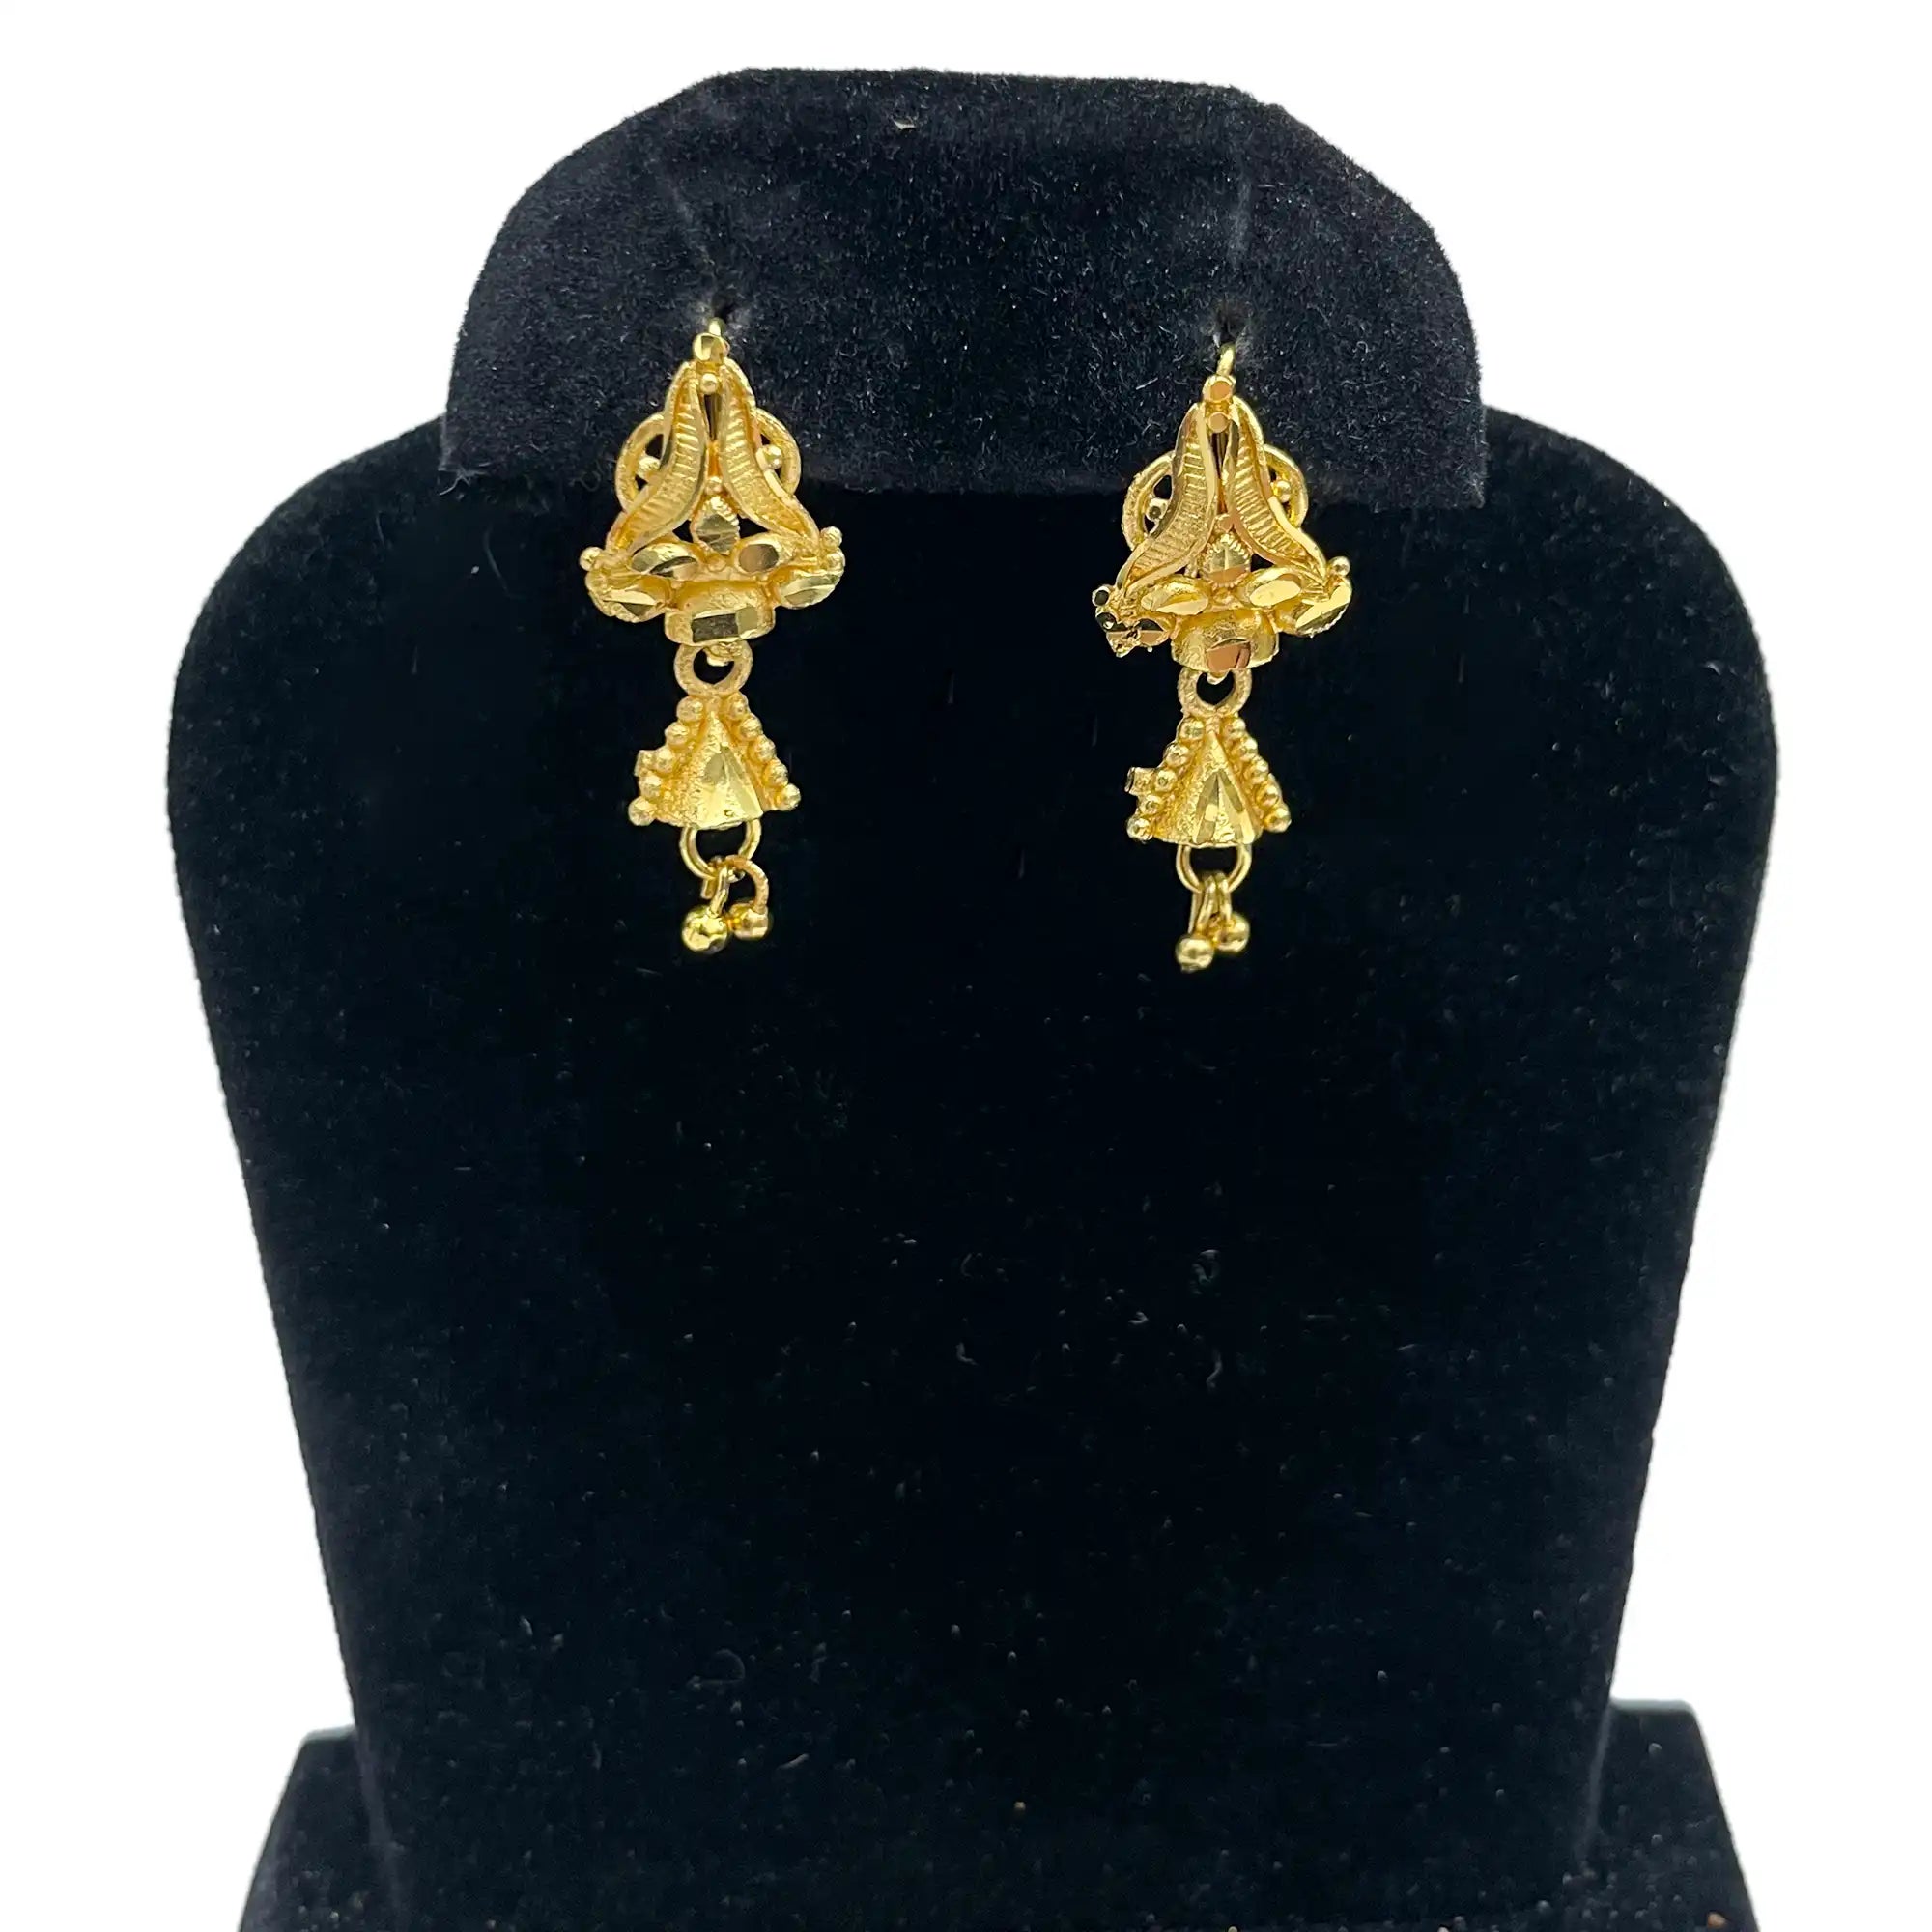 ehanic earrings, jhumka earrings, indian wedding earring